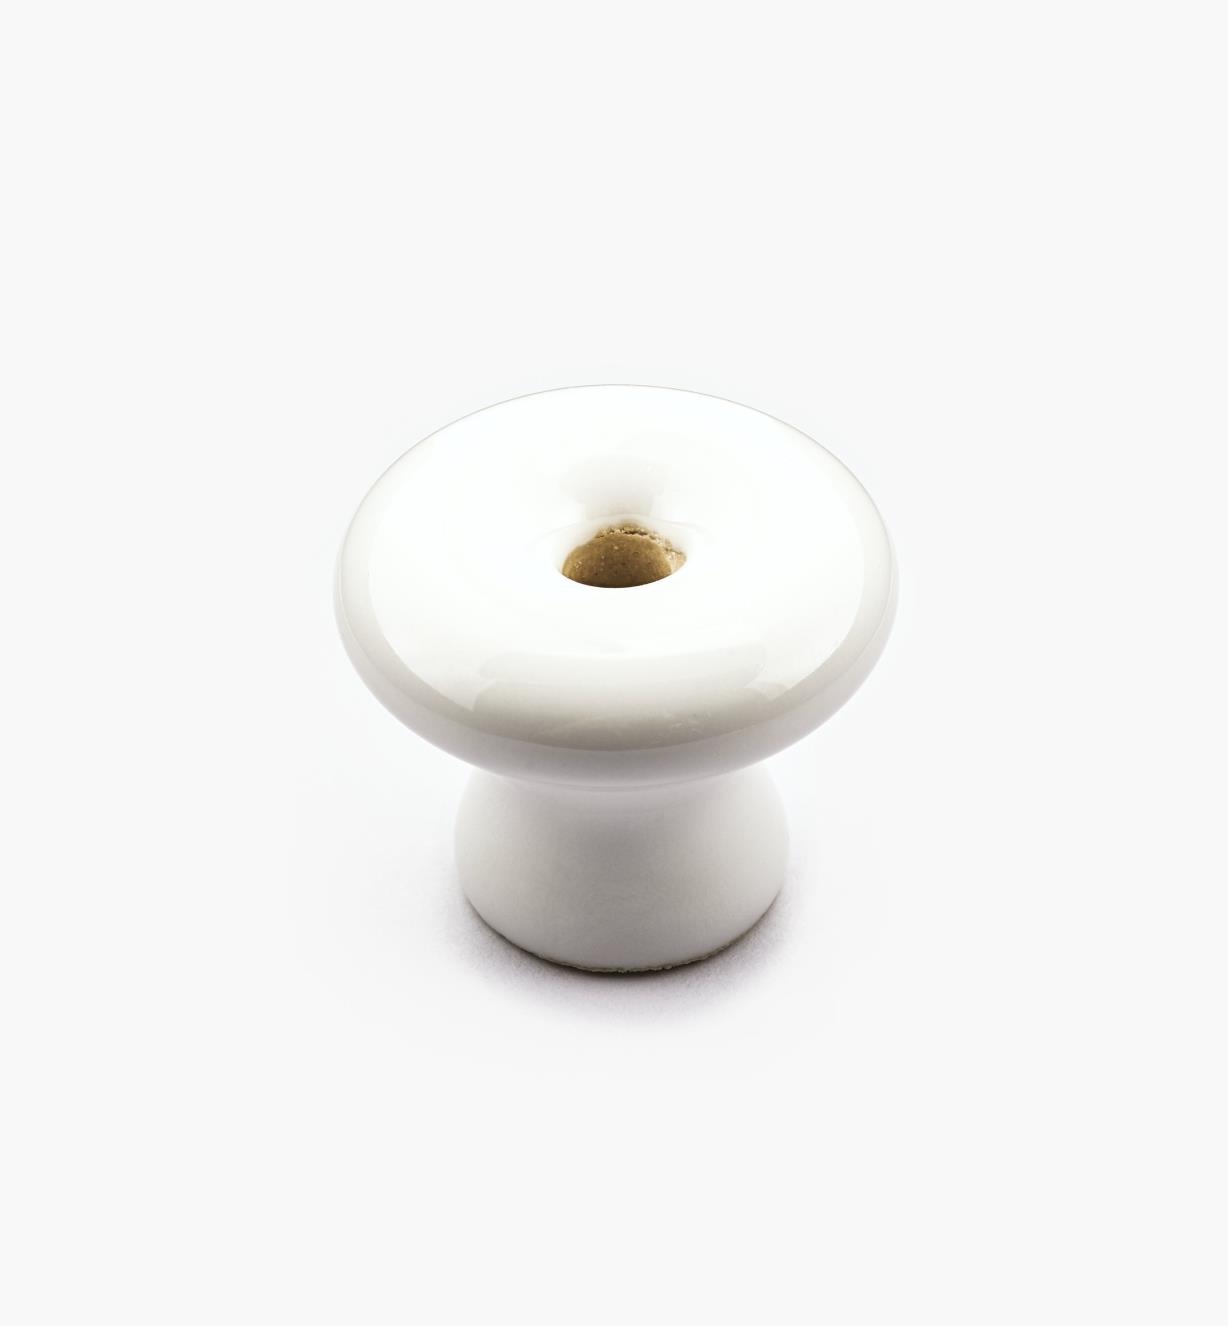 00W2811 - Bouton en céramique classique, blanc, 1 1/4 po x 1 po*